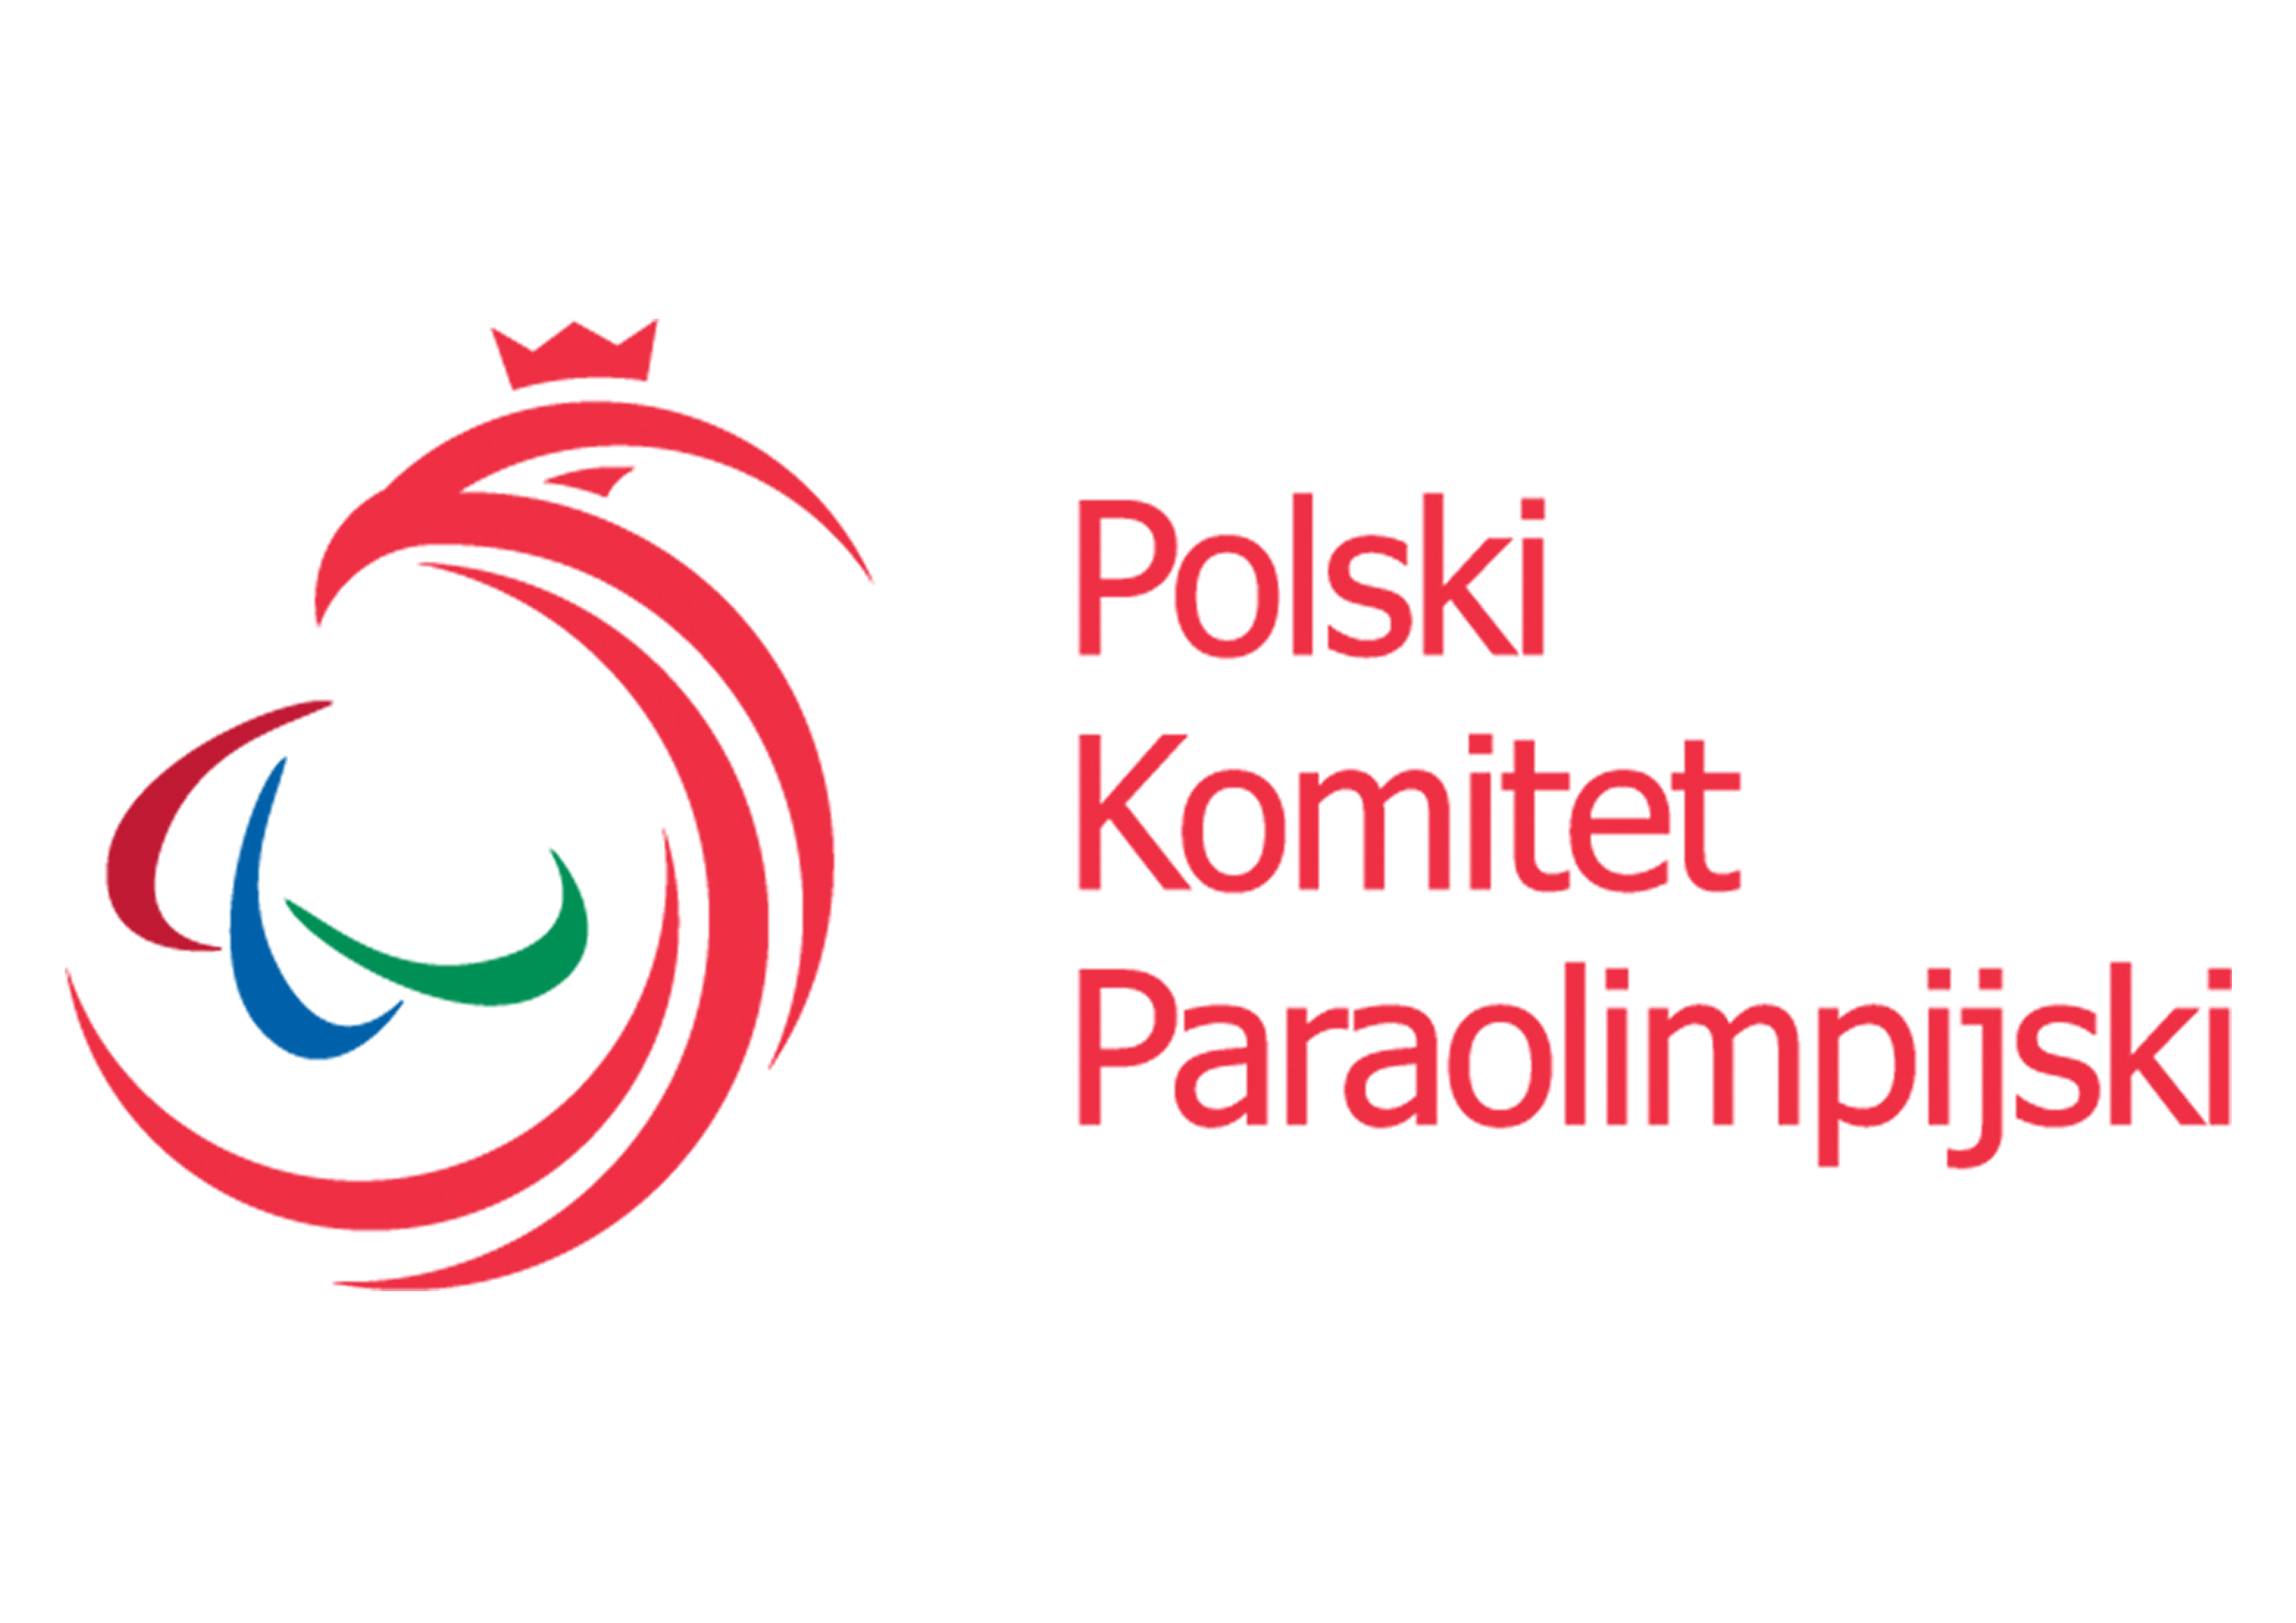 Polski Komitet Paraolimpijski